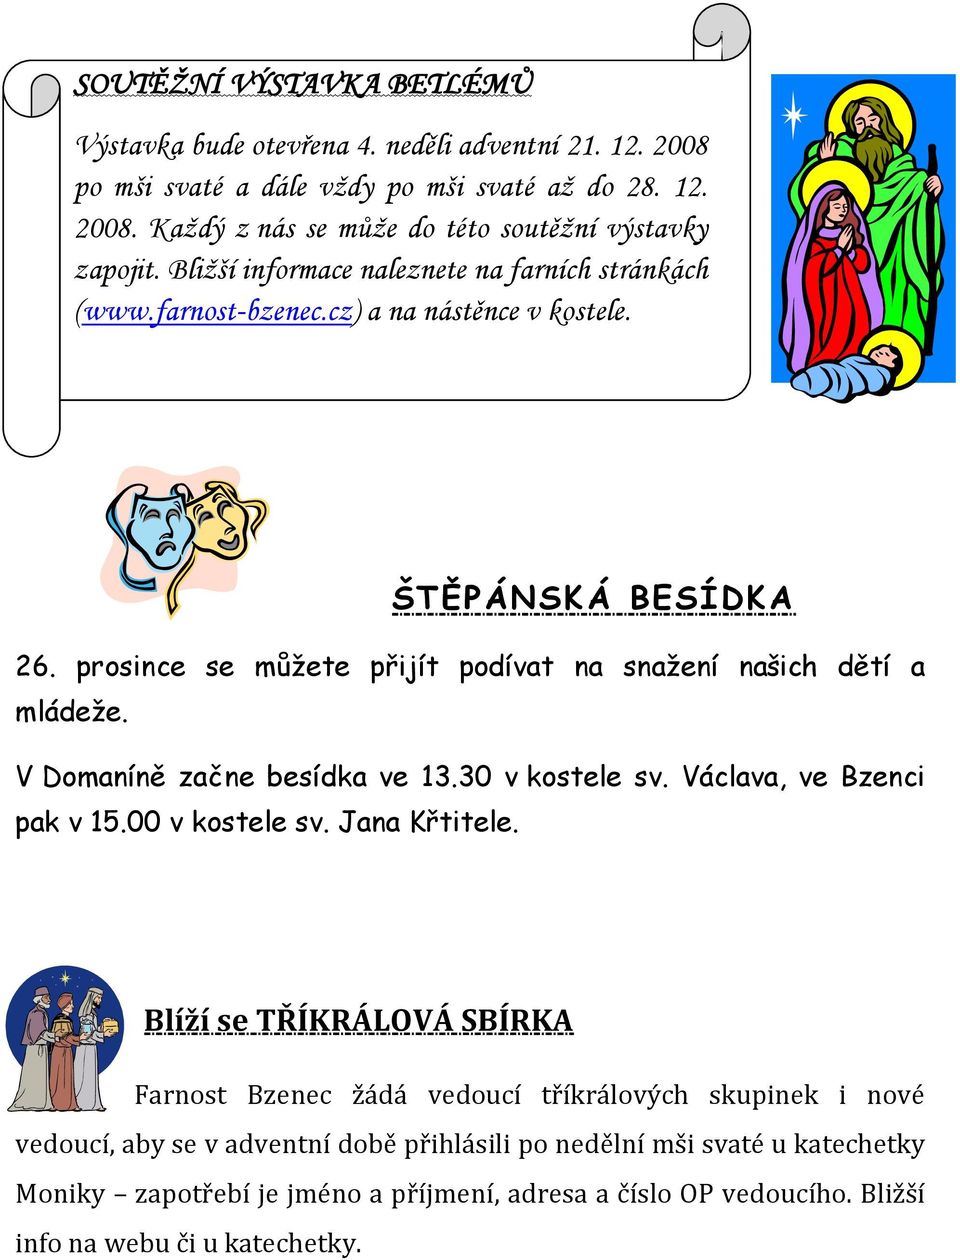 V Domaníně začne besídka ve 13.30 v kostele sv. Václava, ve Bzenci pak v 15.00 v kostele sv. Jana Křtitele.